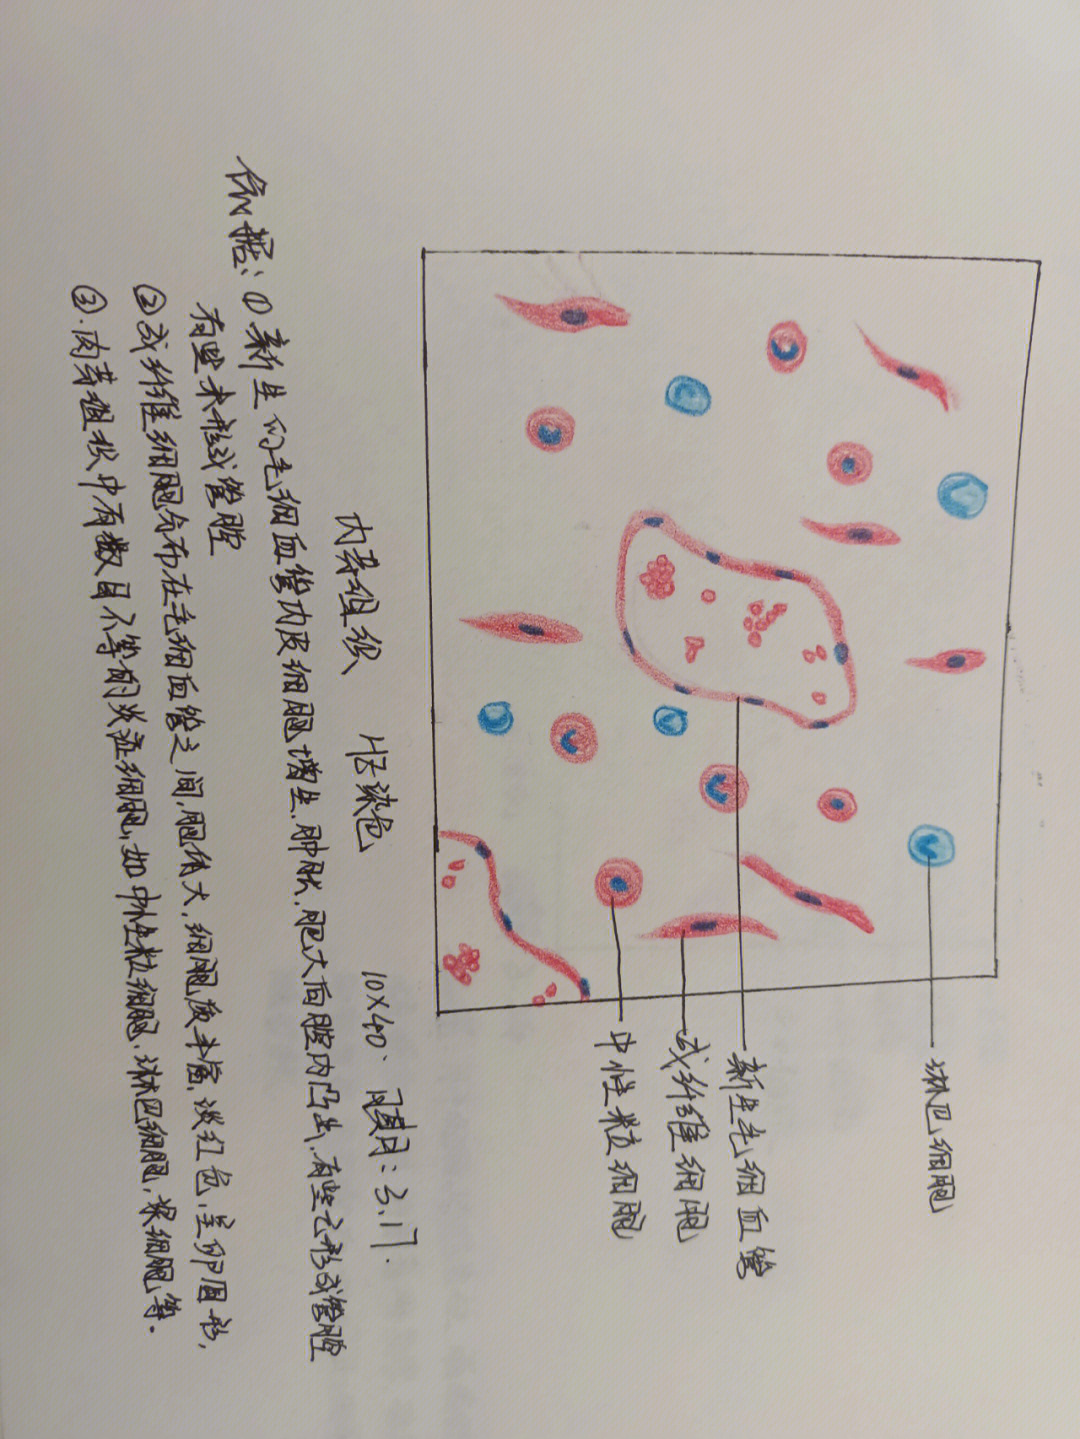 疟原虫红蓝铅笔绘图图片